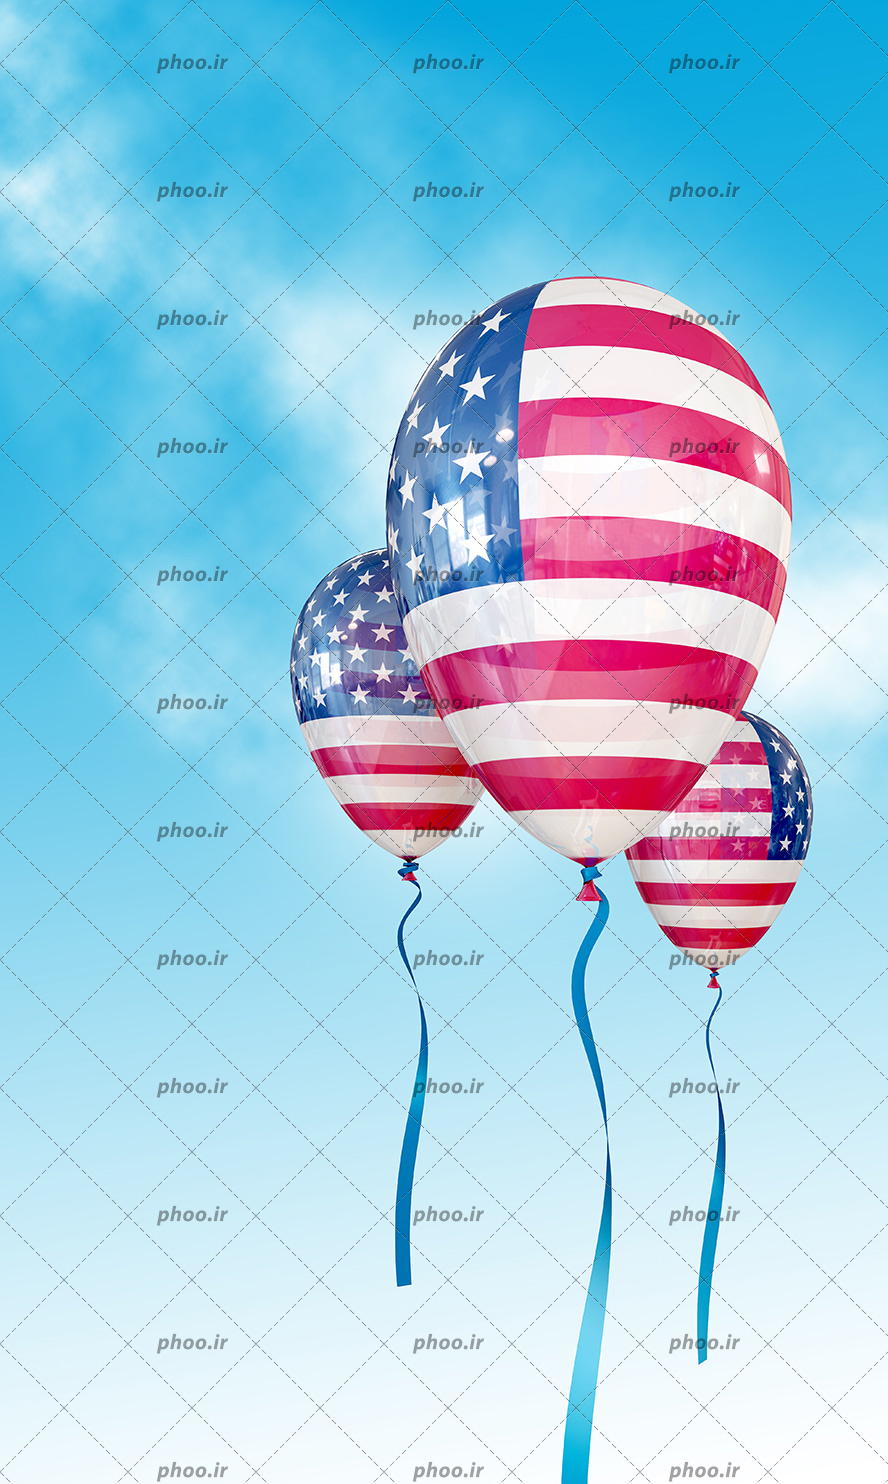 عکس با کیفیت سه بادکنک هلیومی با طرح پرچم آمریکا در آسمان آبی